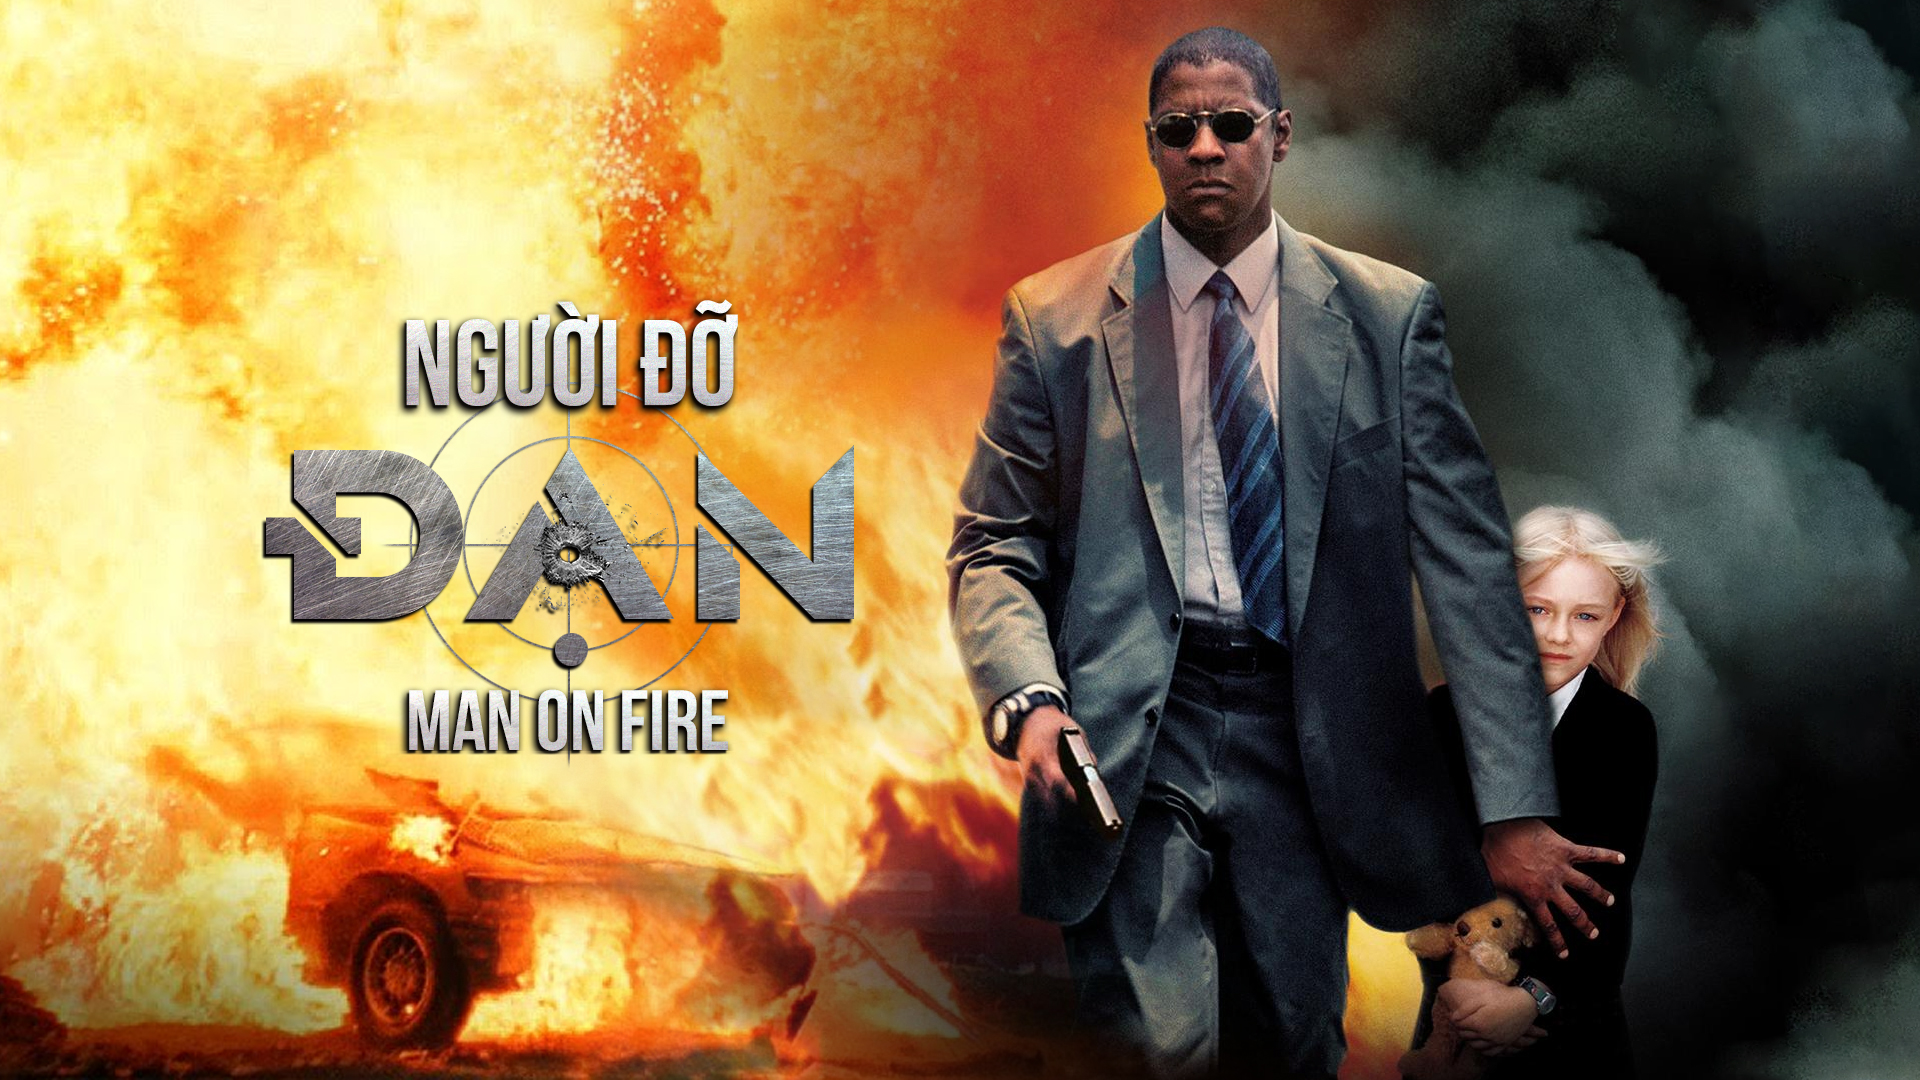 20. Phim Man on Fire - Người đàn ông cháy tử thiêu.